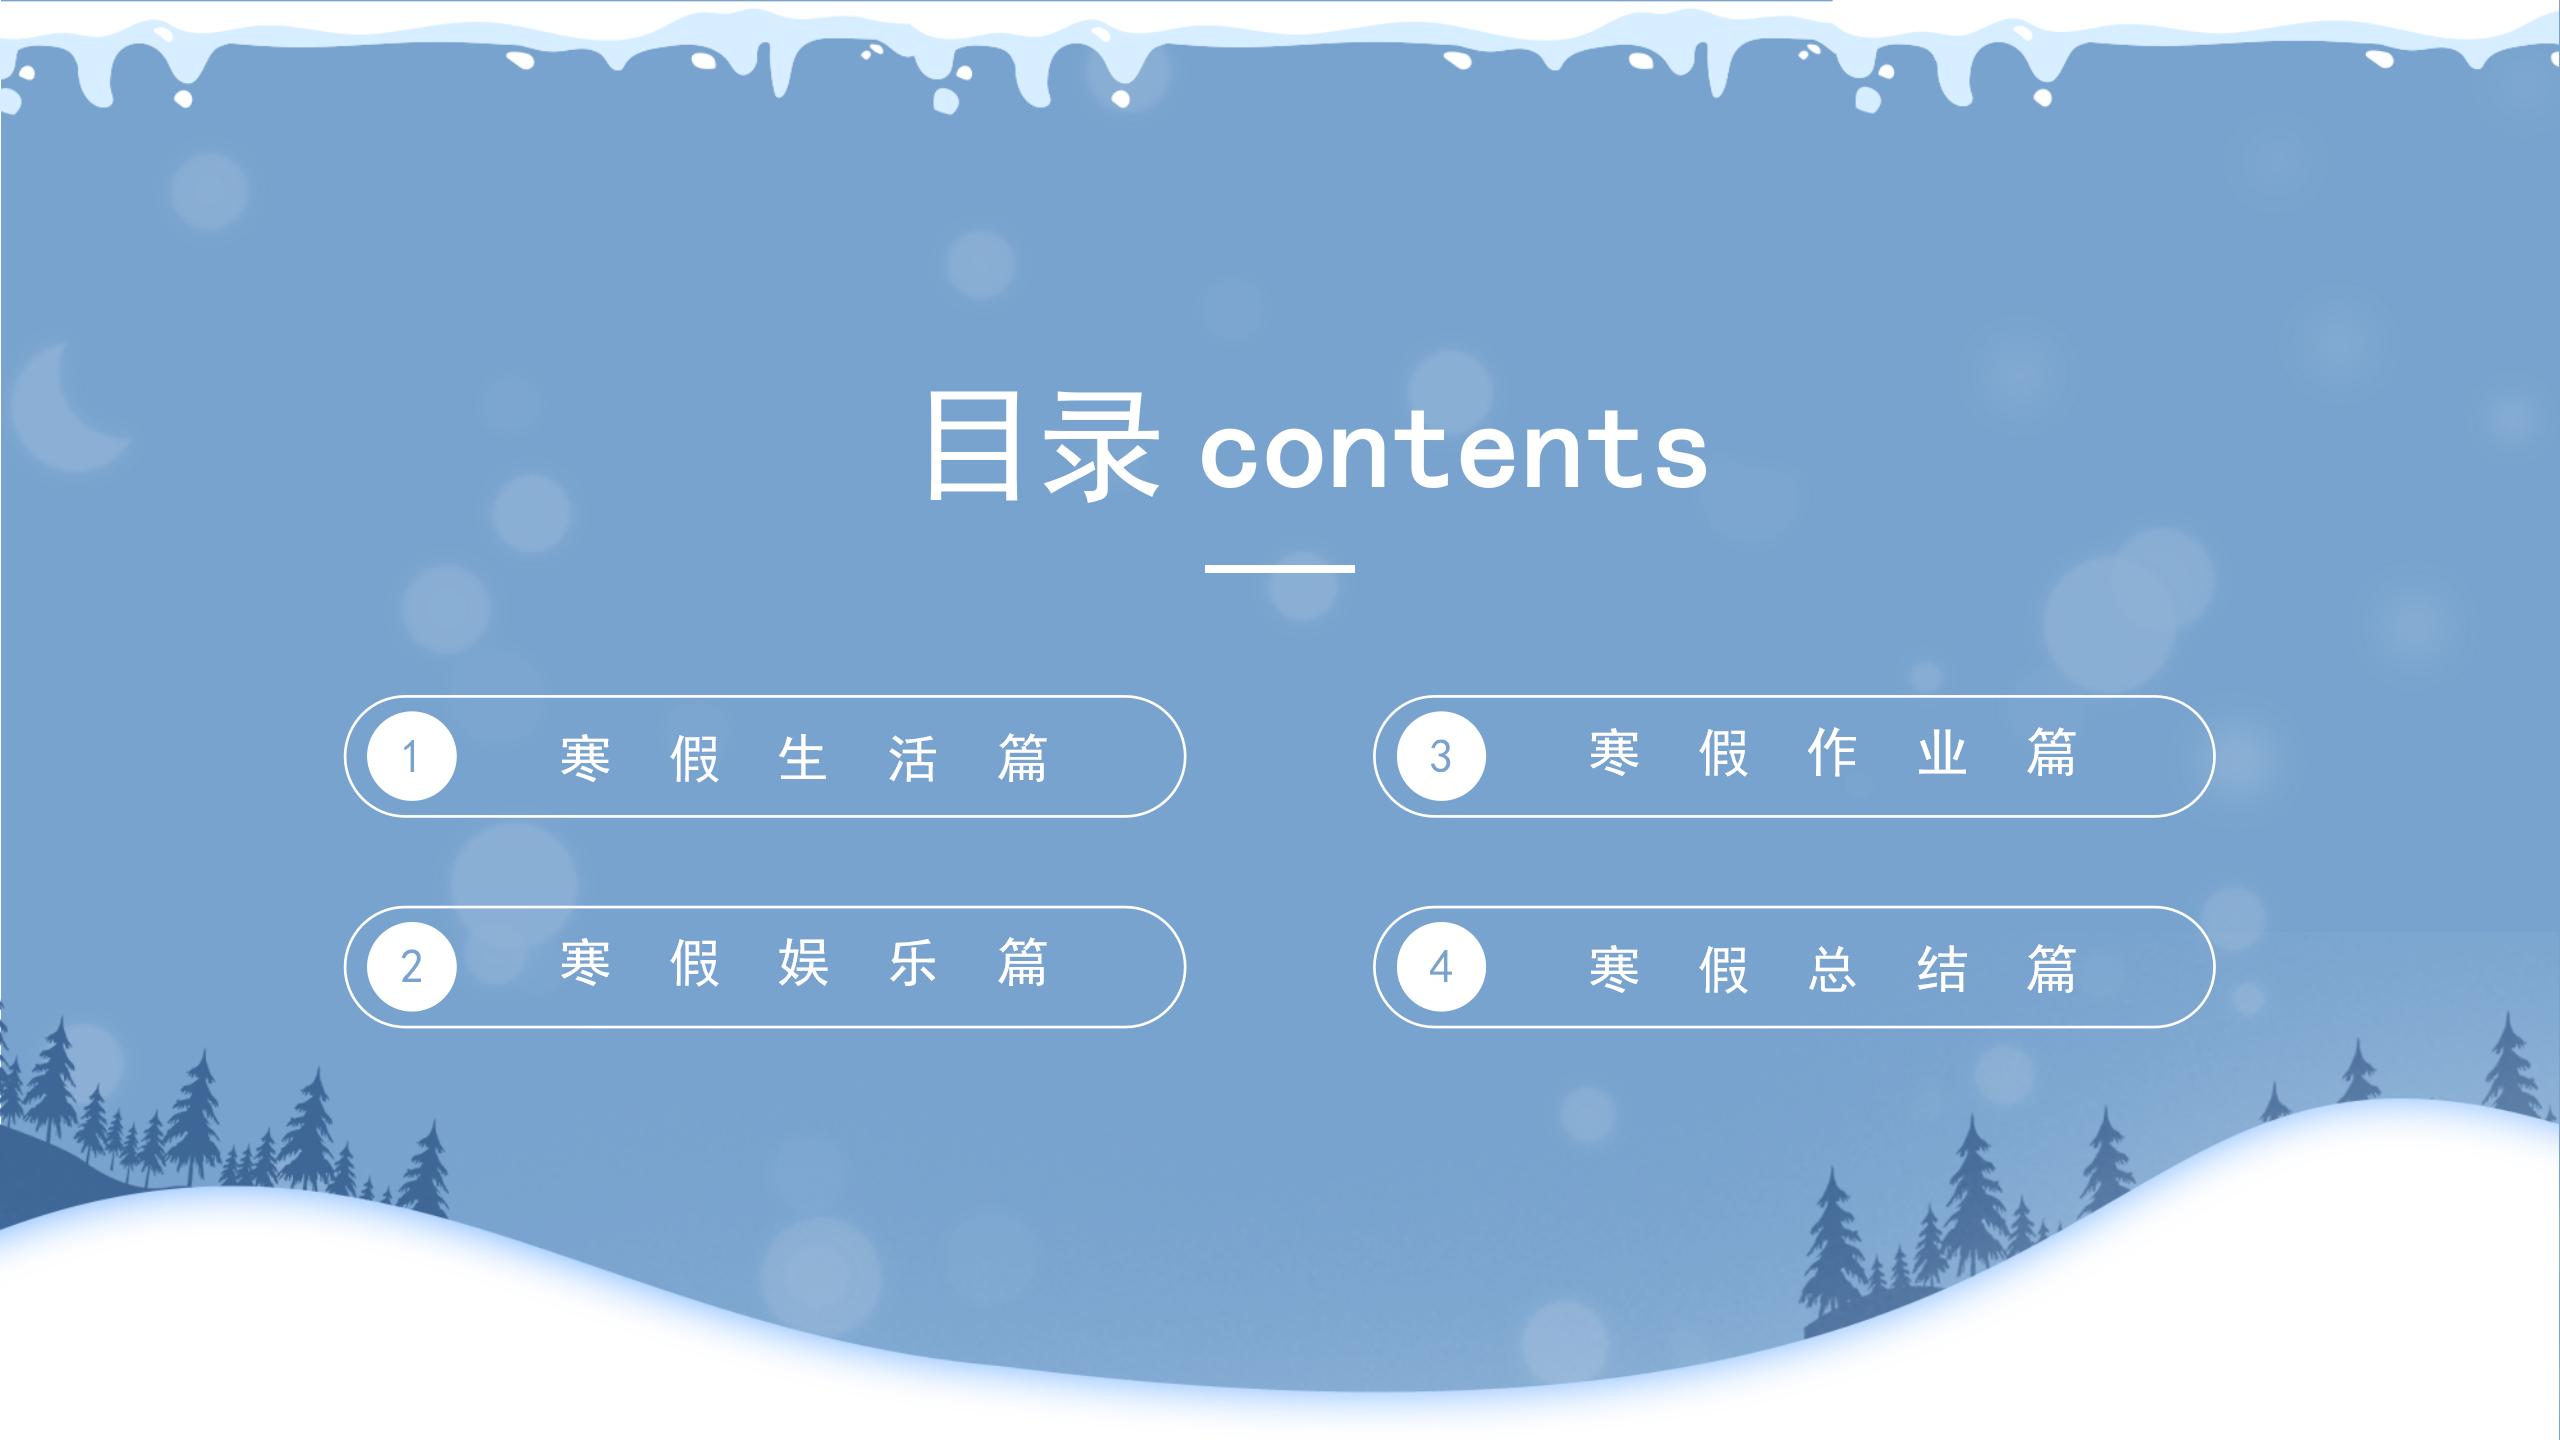 蓝色雪景简约卡通寒假计划生活记录假期生活主题PPT模板